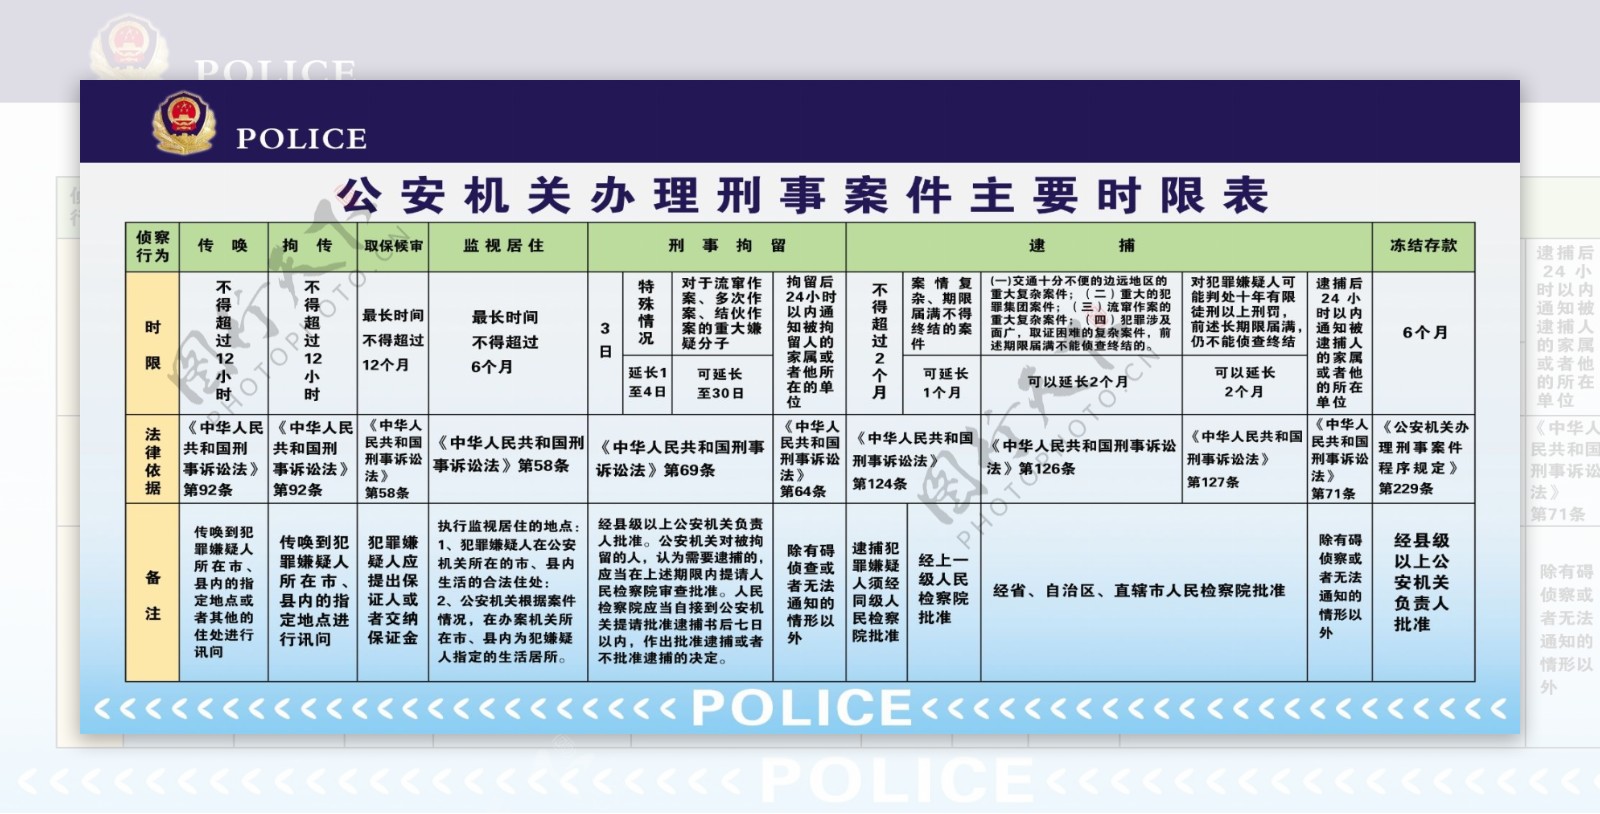 公安机关办理刑事案件主要时限表图片